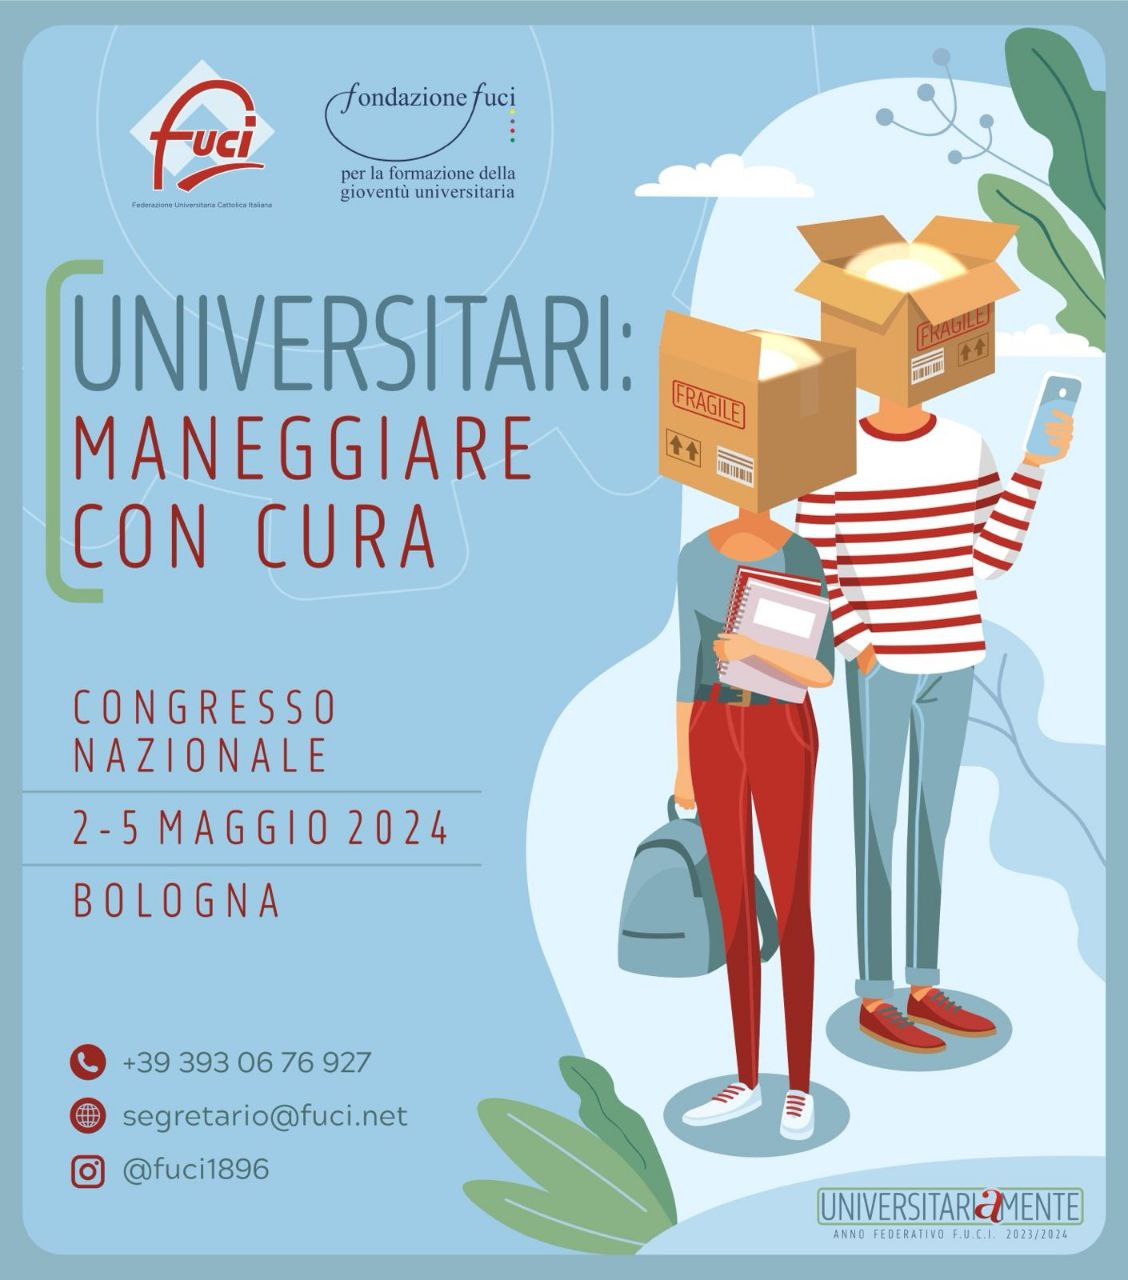 Sulla locandine si legge: "Universitari: maneggiare con cura. Congresso nazionale. 2-5 Maggio 2024. Bologna